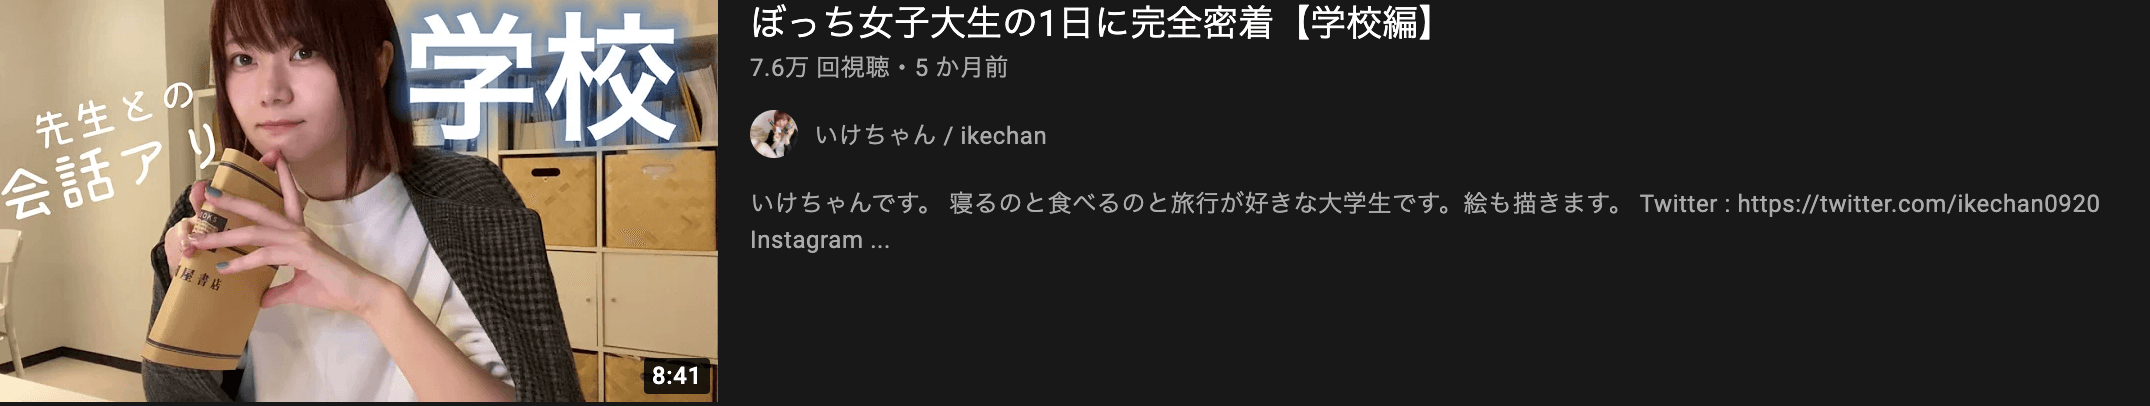 youtube_vlog_ikechan